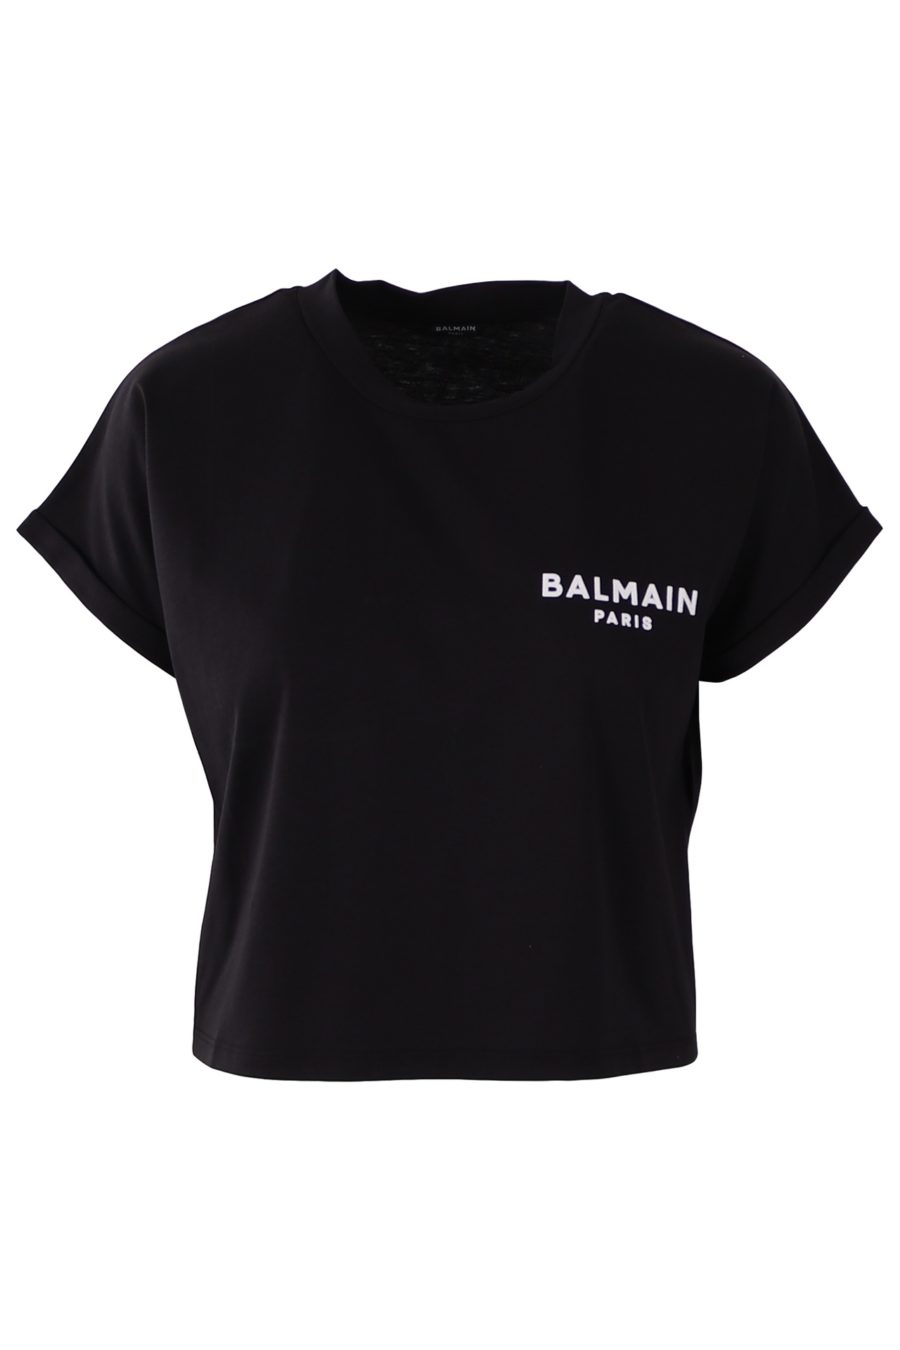 Balmain schwarzes kurzes T-Shirt mit kleinem Logo - 2fed960d4683afff8c064cd8a38aa43f53d6046f